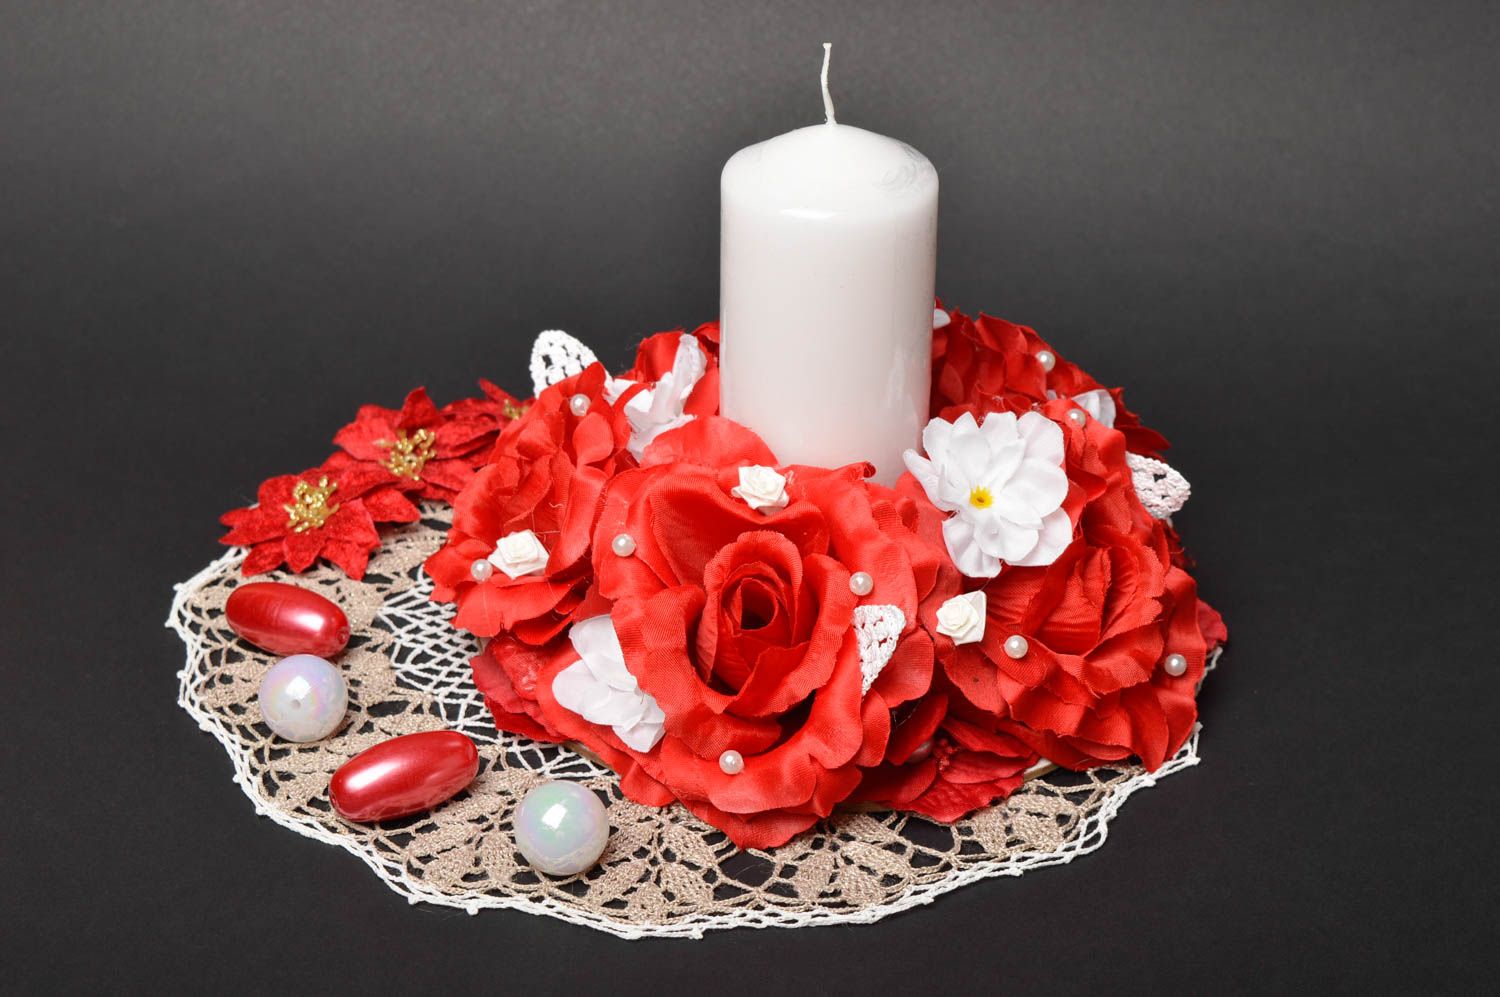 Vela de parafina hecha a mano accesorio de boda objeto de decoración de mesa foto 1